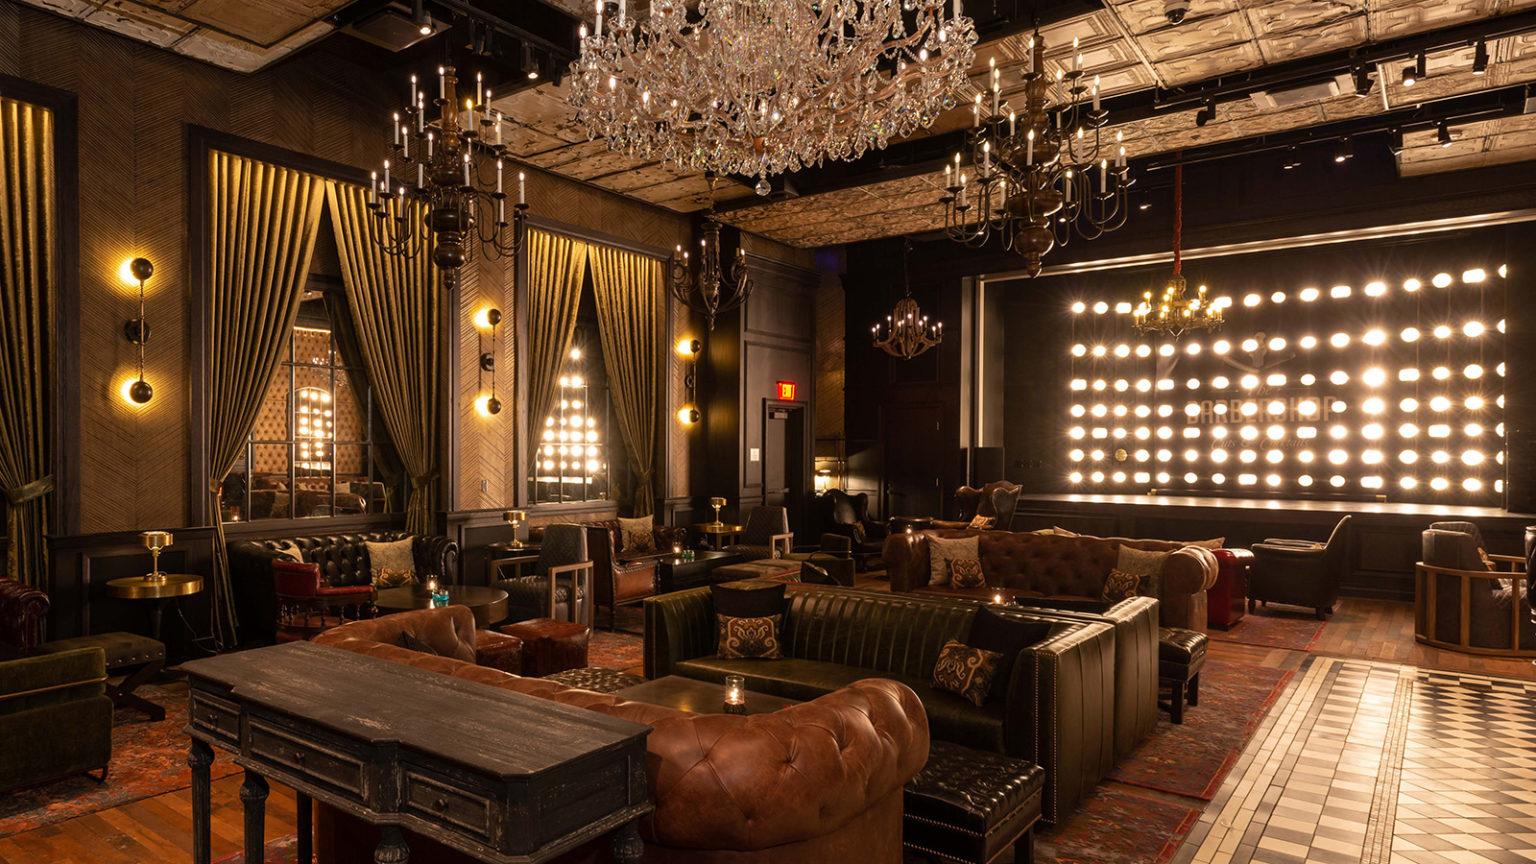 Thiết kế quán bar phong cách cổ điển Châu Âu với tông màu trầm và nội thất cầu kì như đèn chùm, sofa da,...